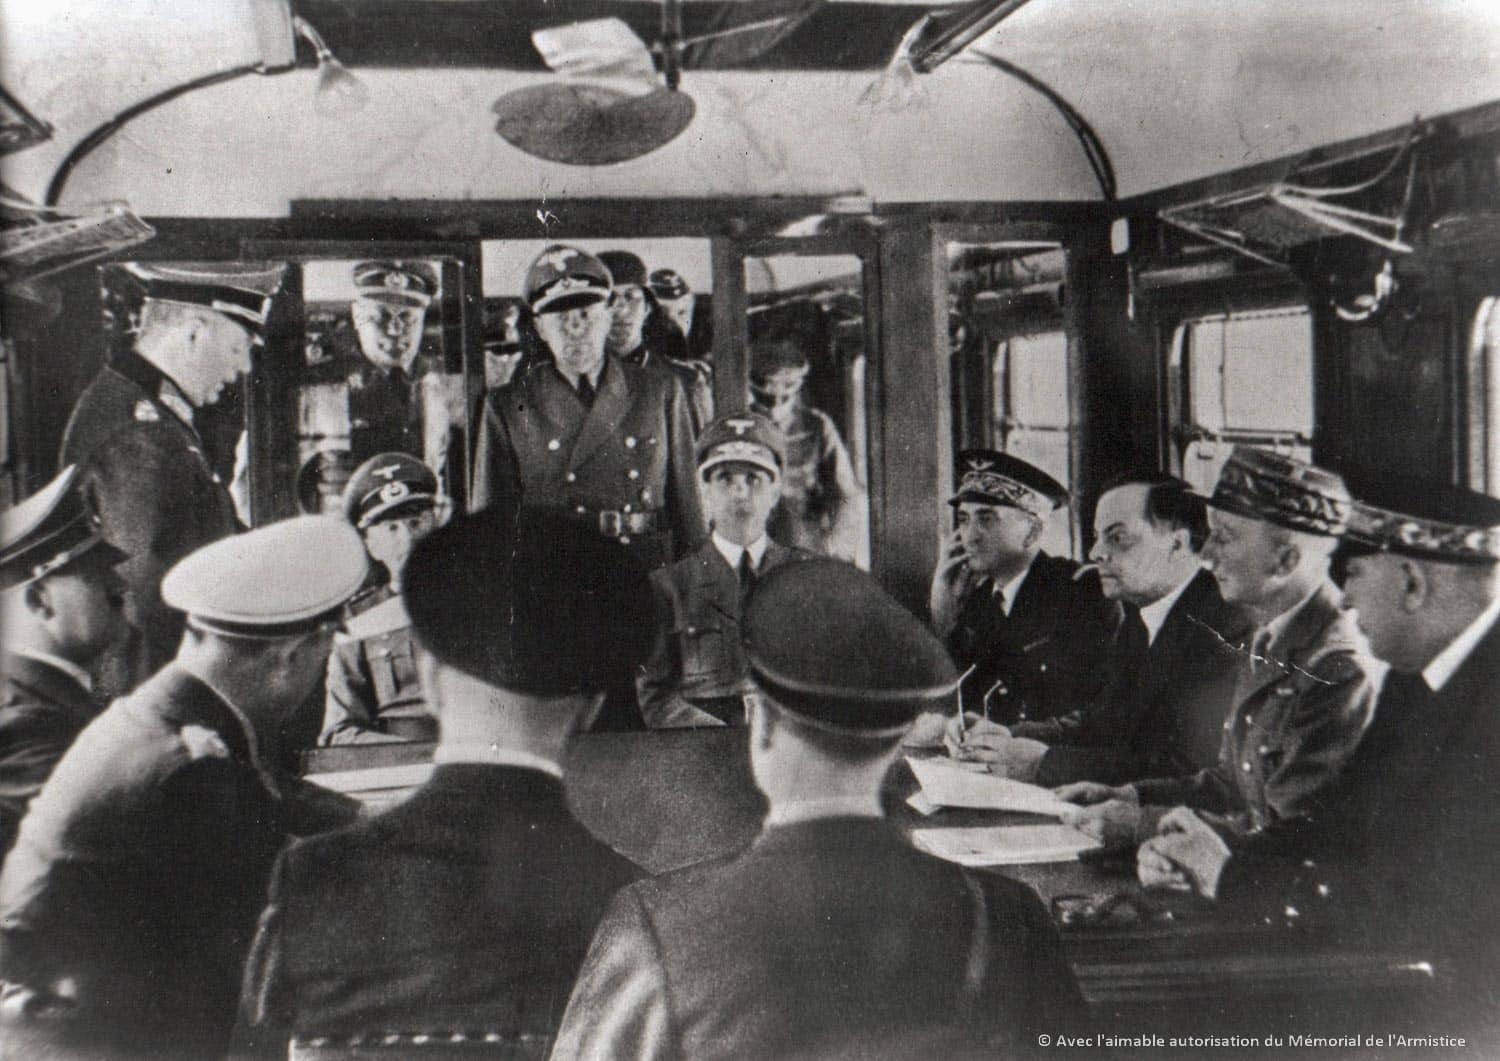 Armistice du 22 juin 1940 - Dans le wagon, le général Keitel prononce un discours écrit par Hitler.